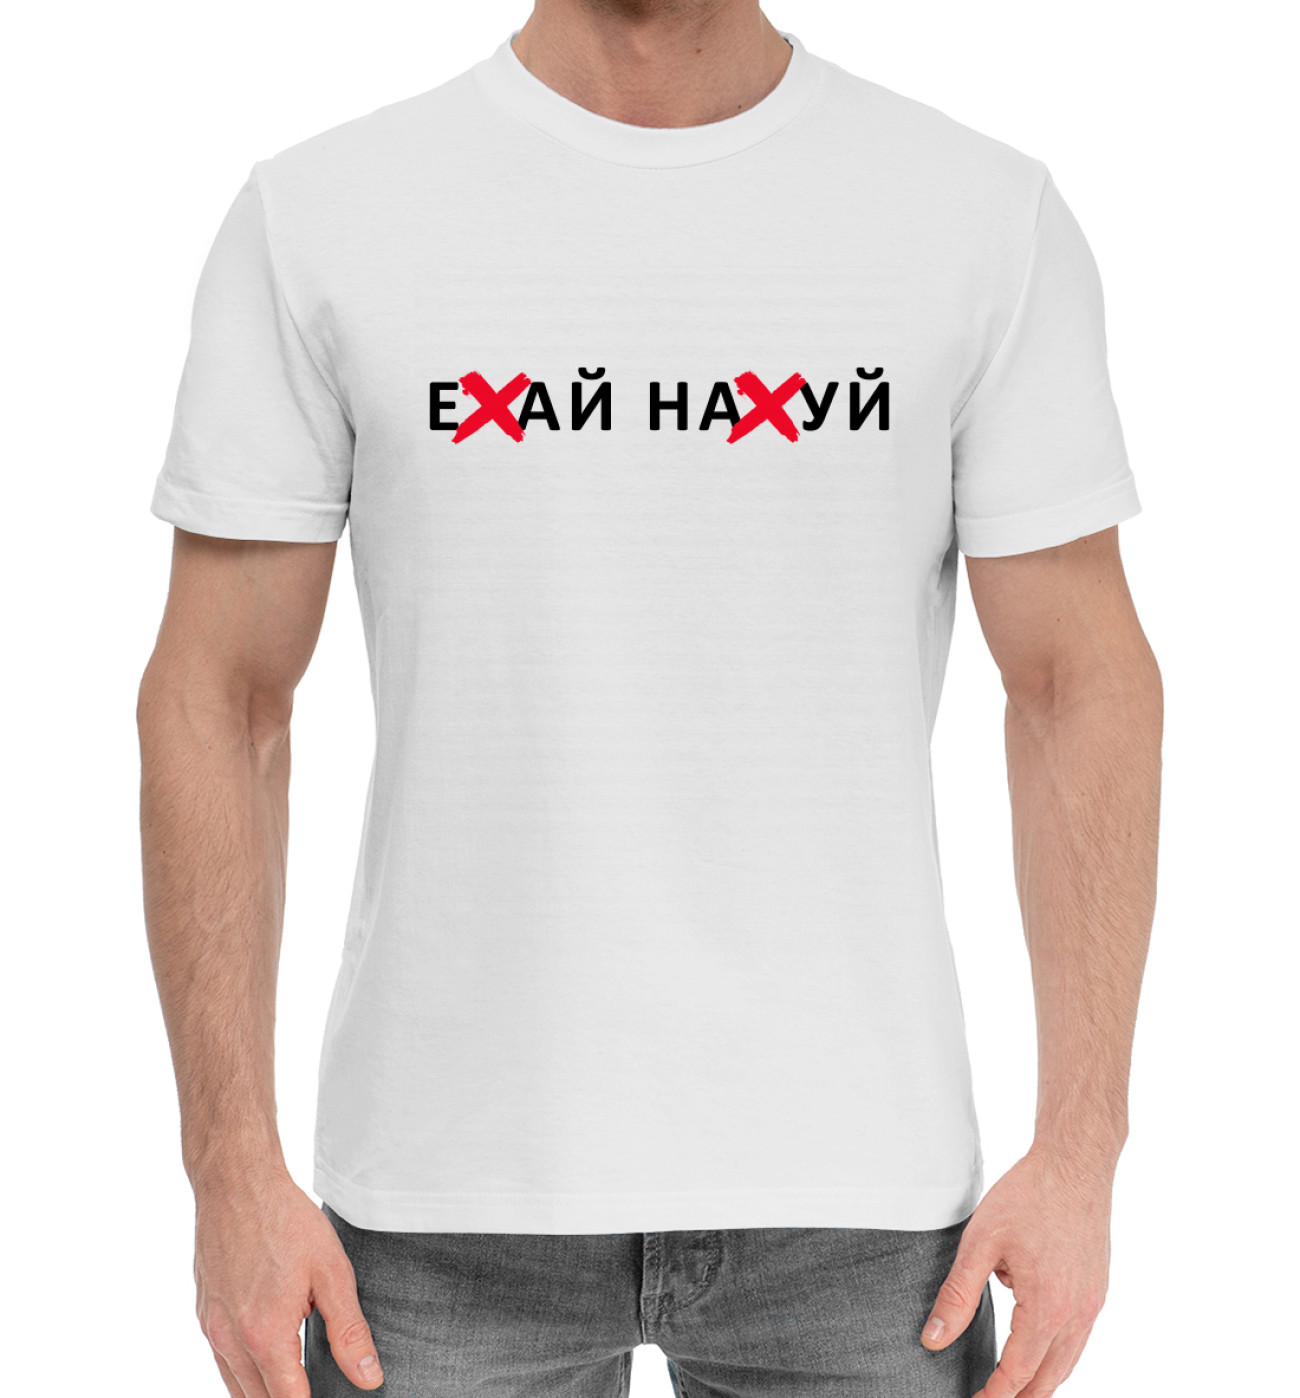 Мужская Хлопковая футболка Ехай нахуй, артикул: CEN-116105-hfu-2